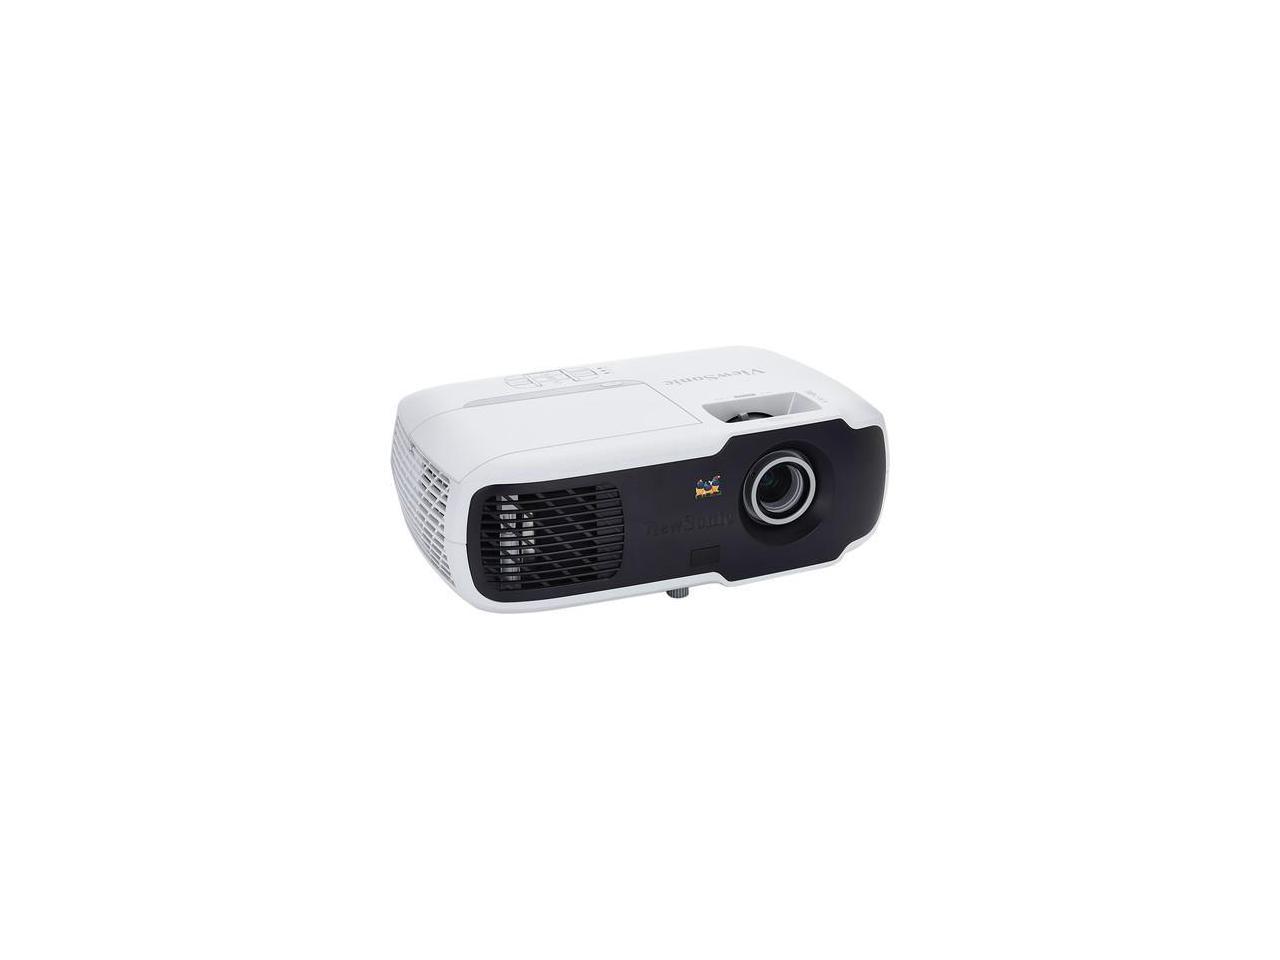 ViewSonic Projector PA502X XGA DLP 1024x768 3500lm 2200:1 HDMI/VGA Out mUSB RS232 (PA502X)